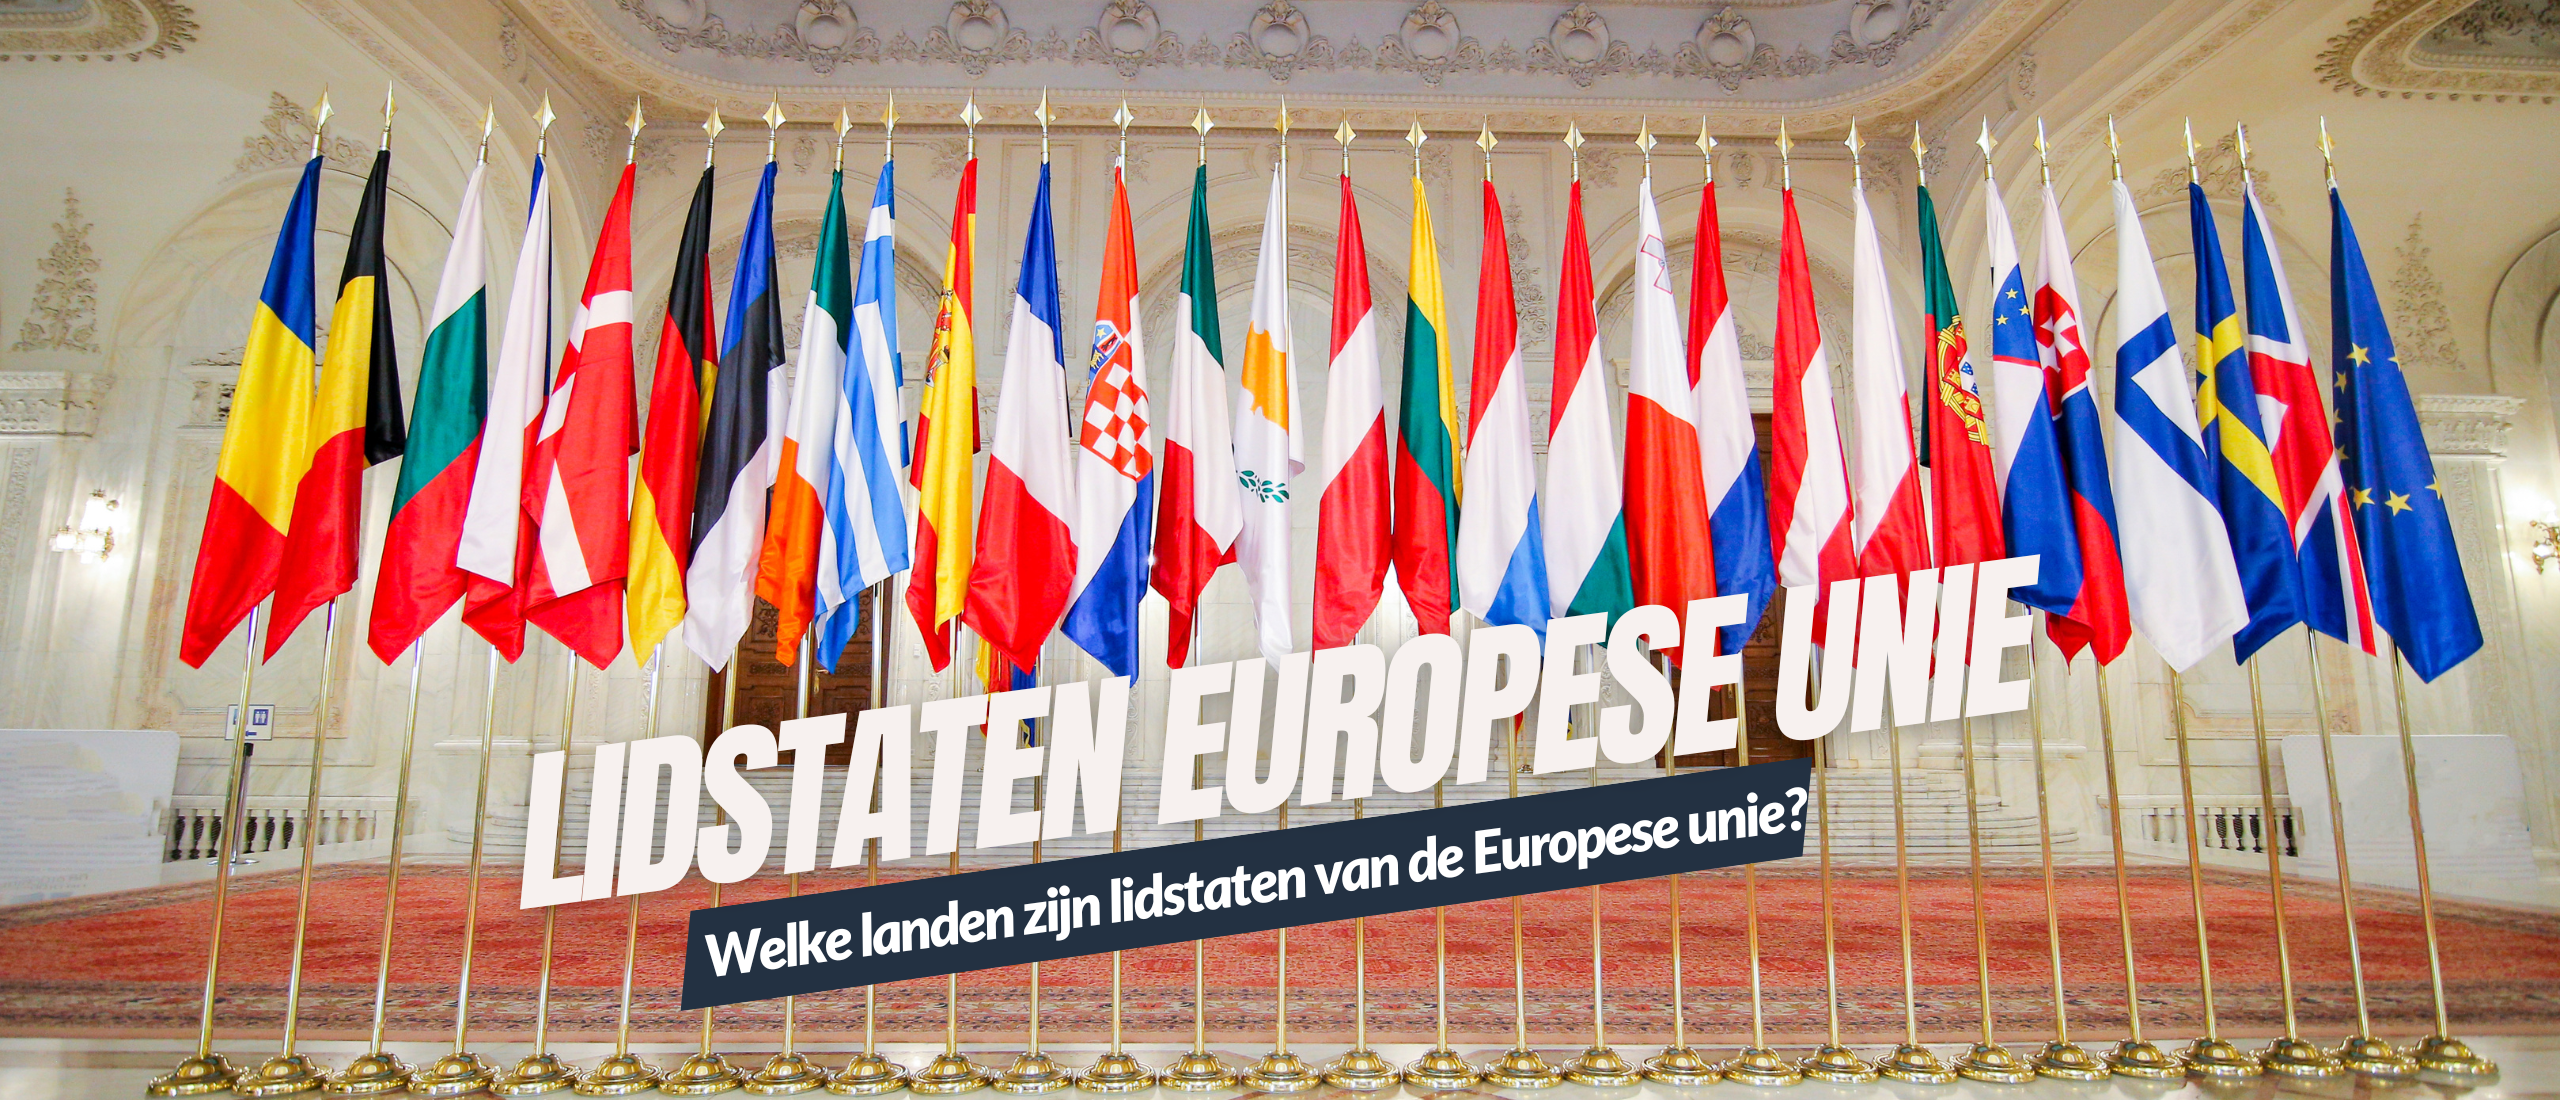 Welke landen zijn lid van de europese unie - Kennisbank Covers Genzeloos Gastvrij